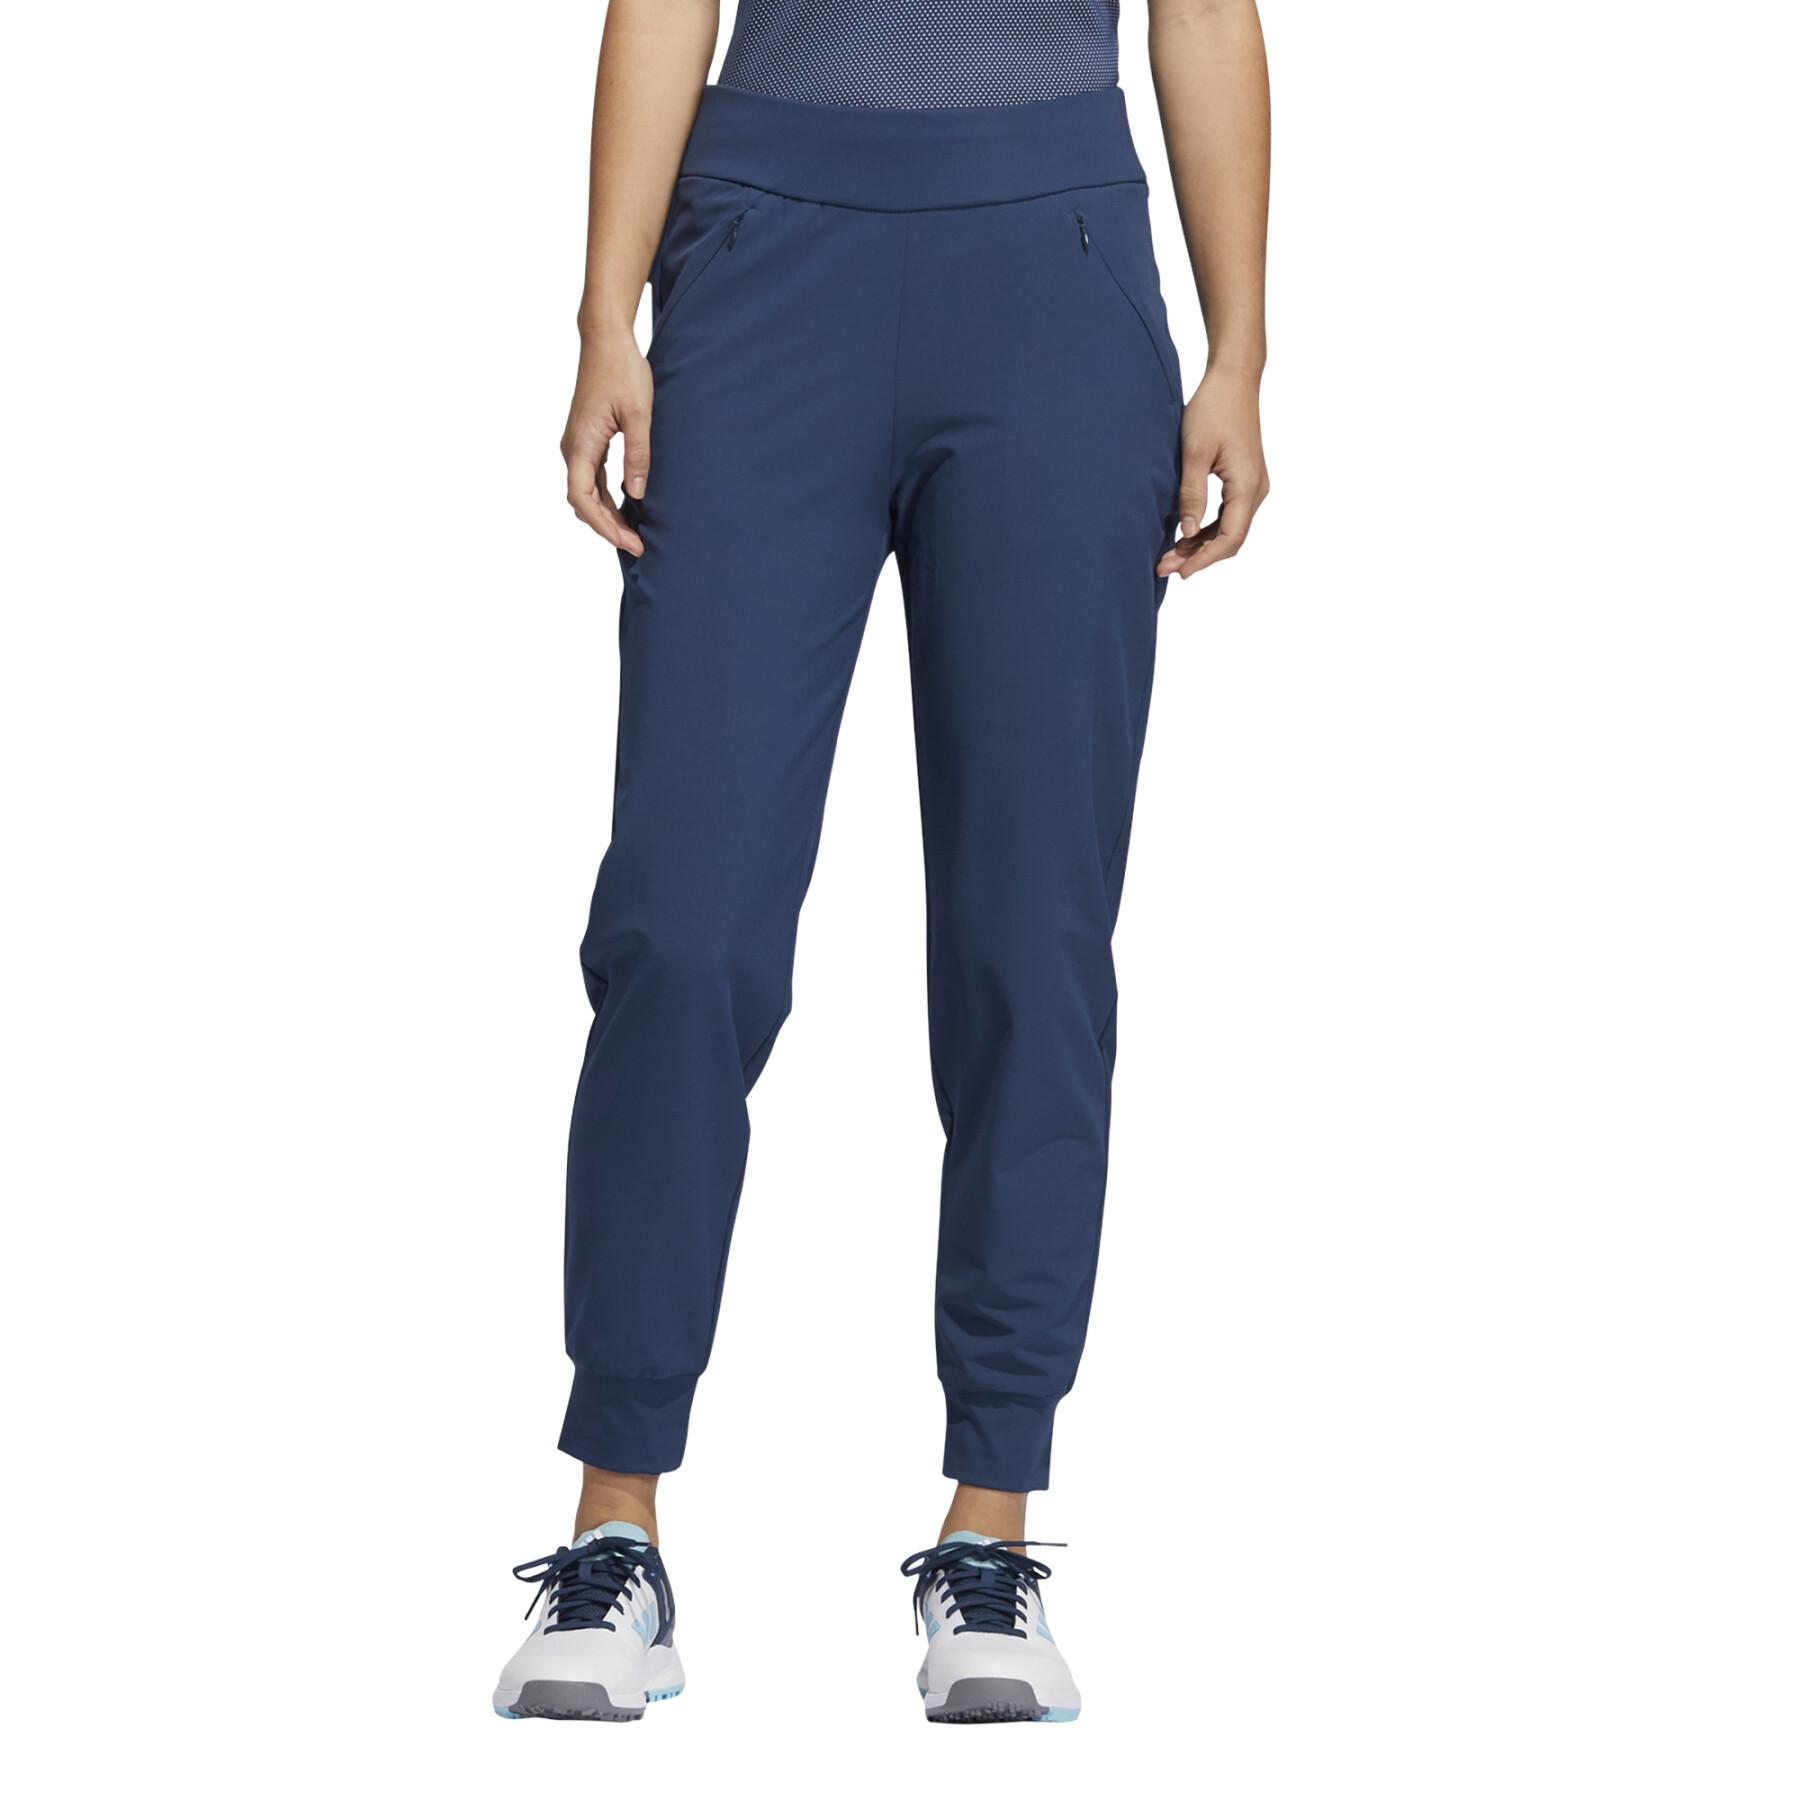 Pantalon de jogging femme adidas Stretch